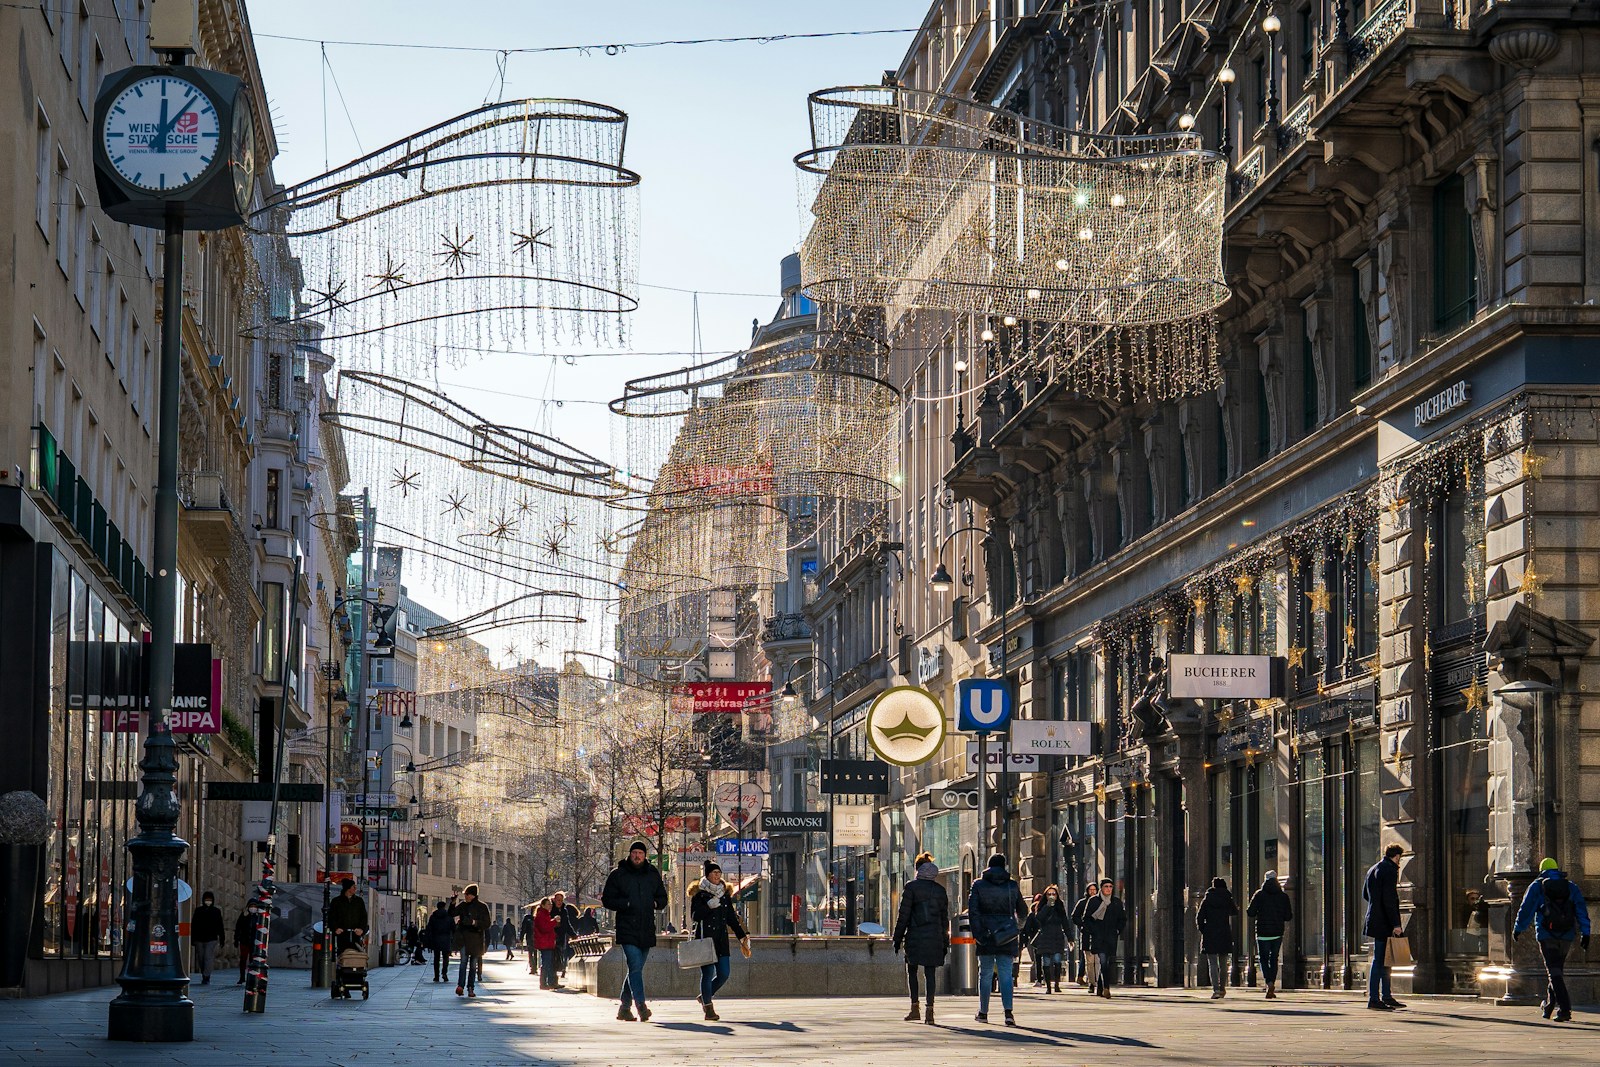 Vienna people walking on street during daytime